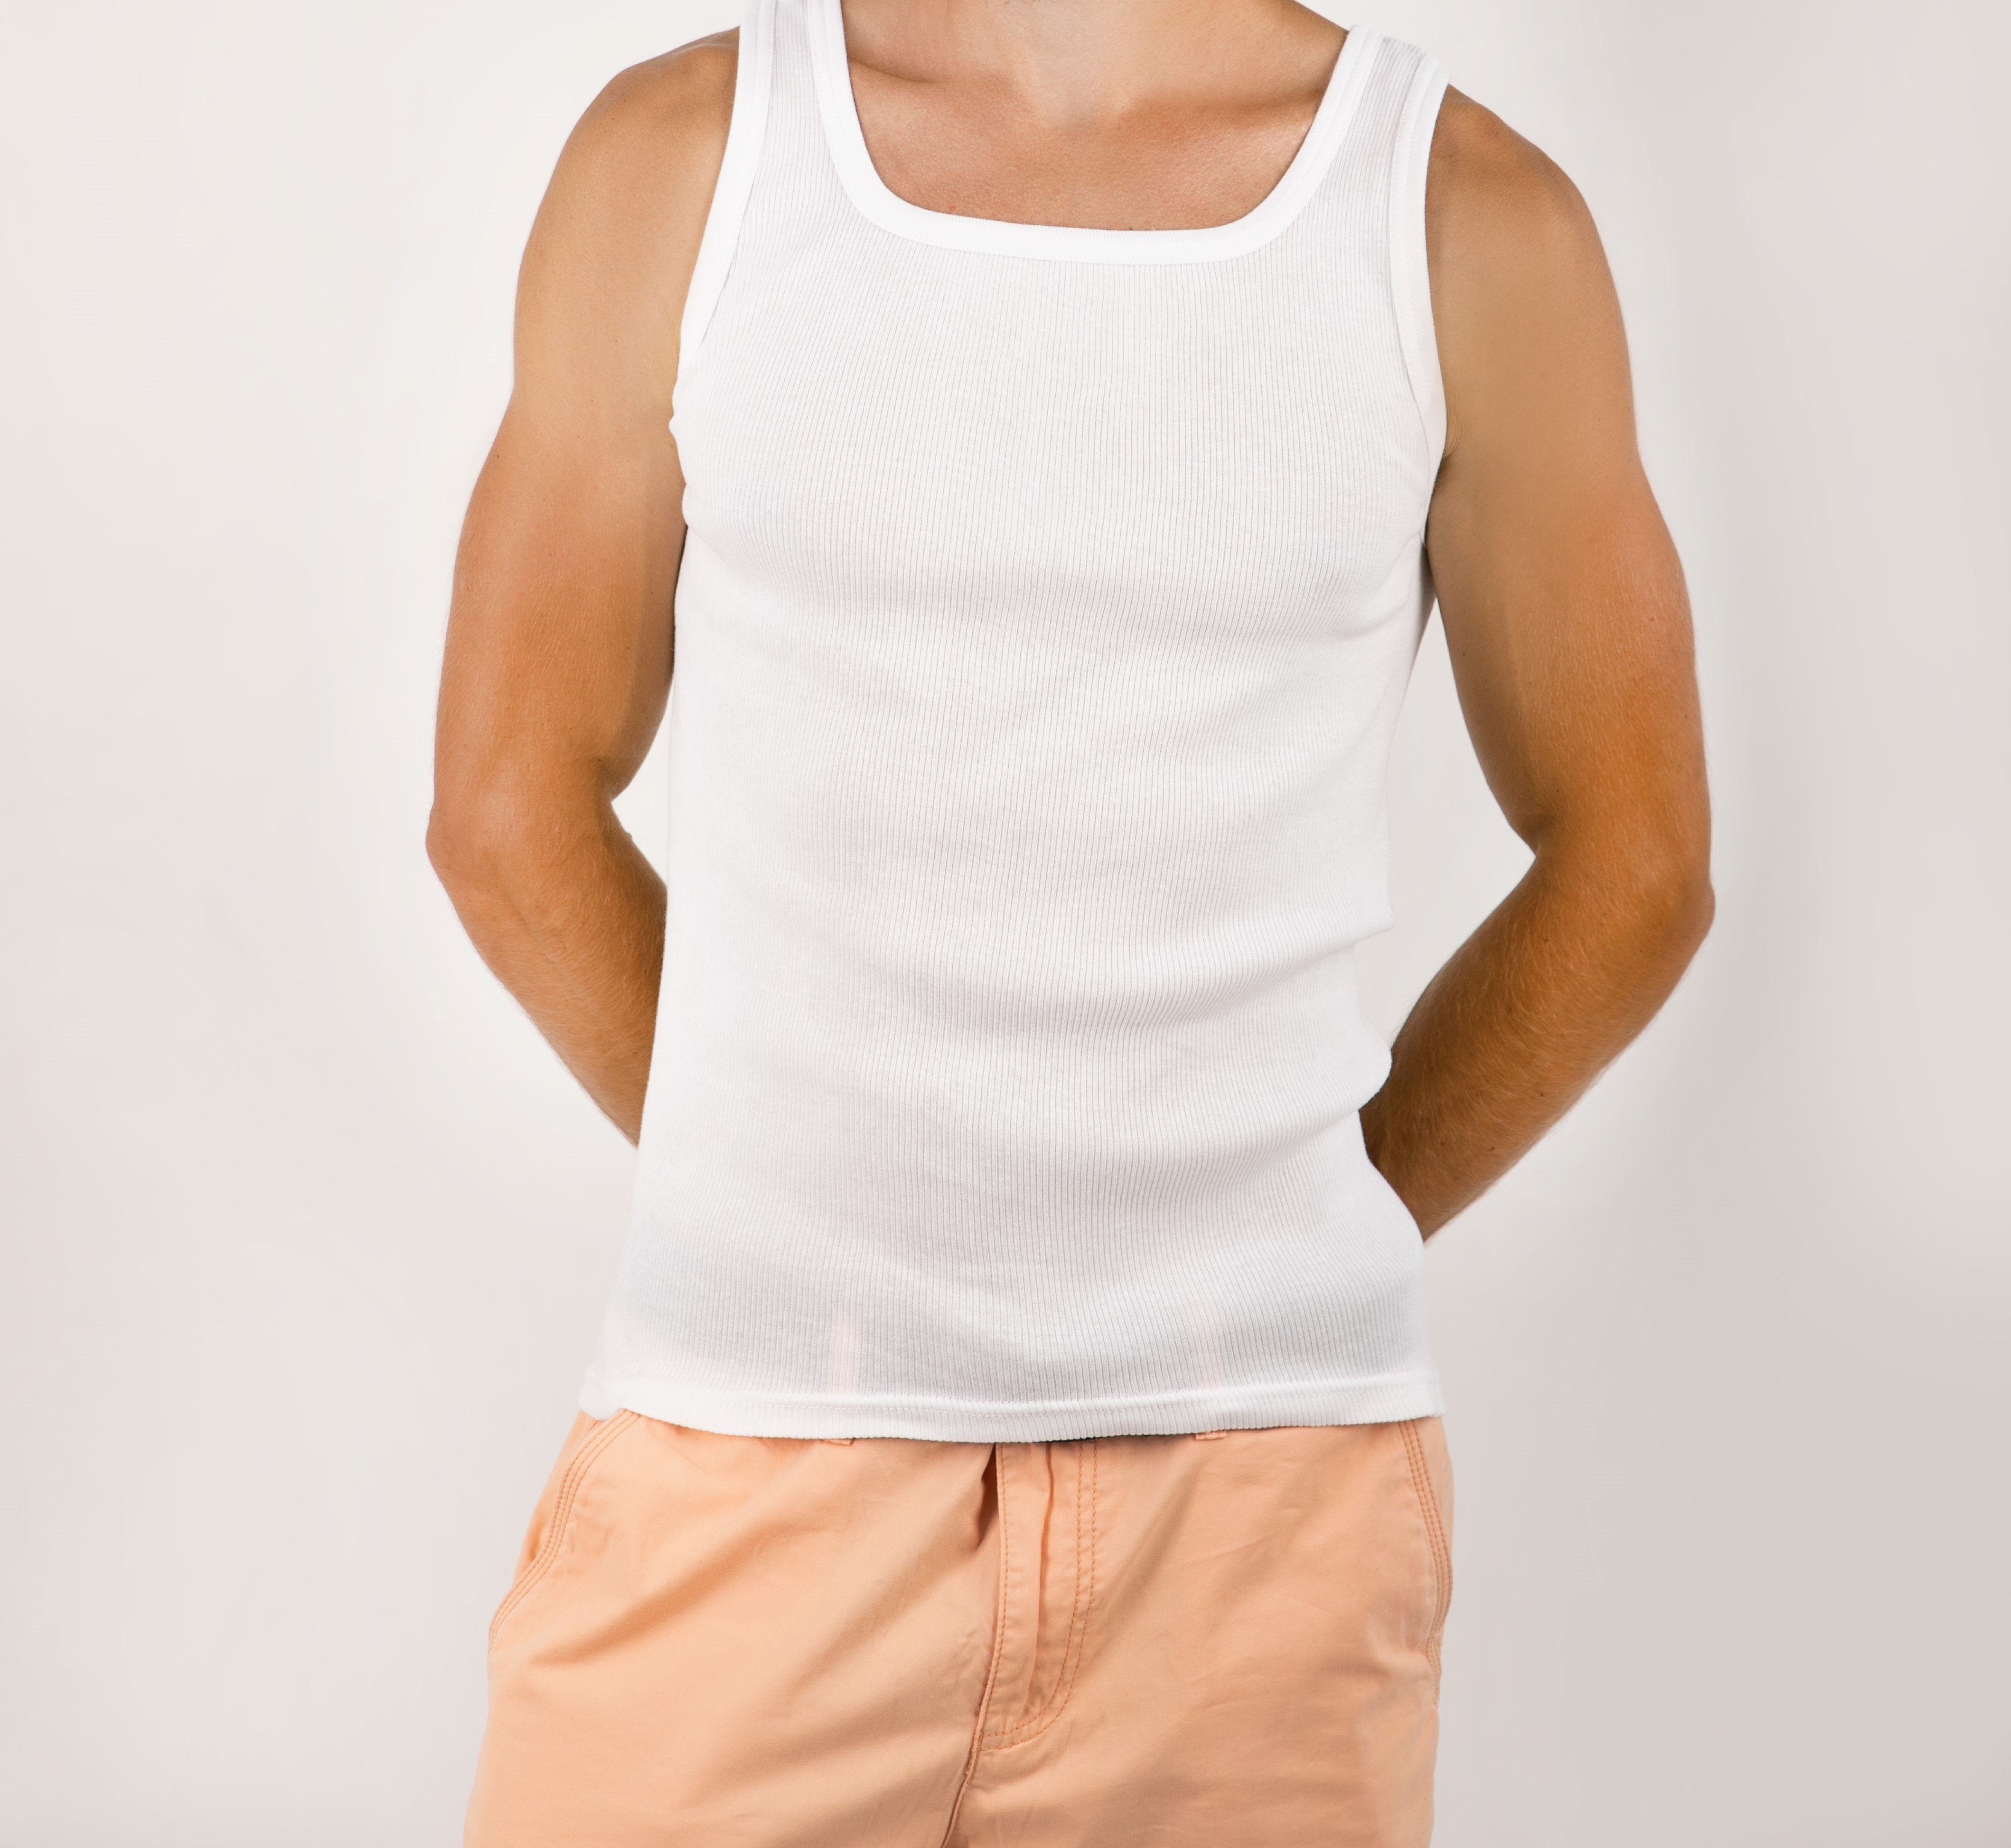 STTS Unterhemd 3-er Baumwolle Feinripp Top-Qualität Weiß Pack 100% Herrenunterhemden